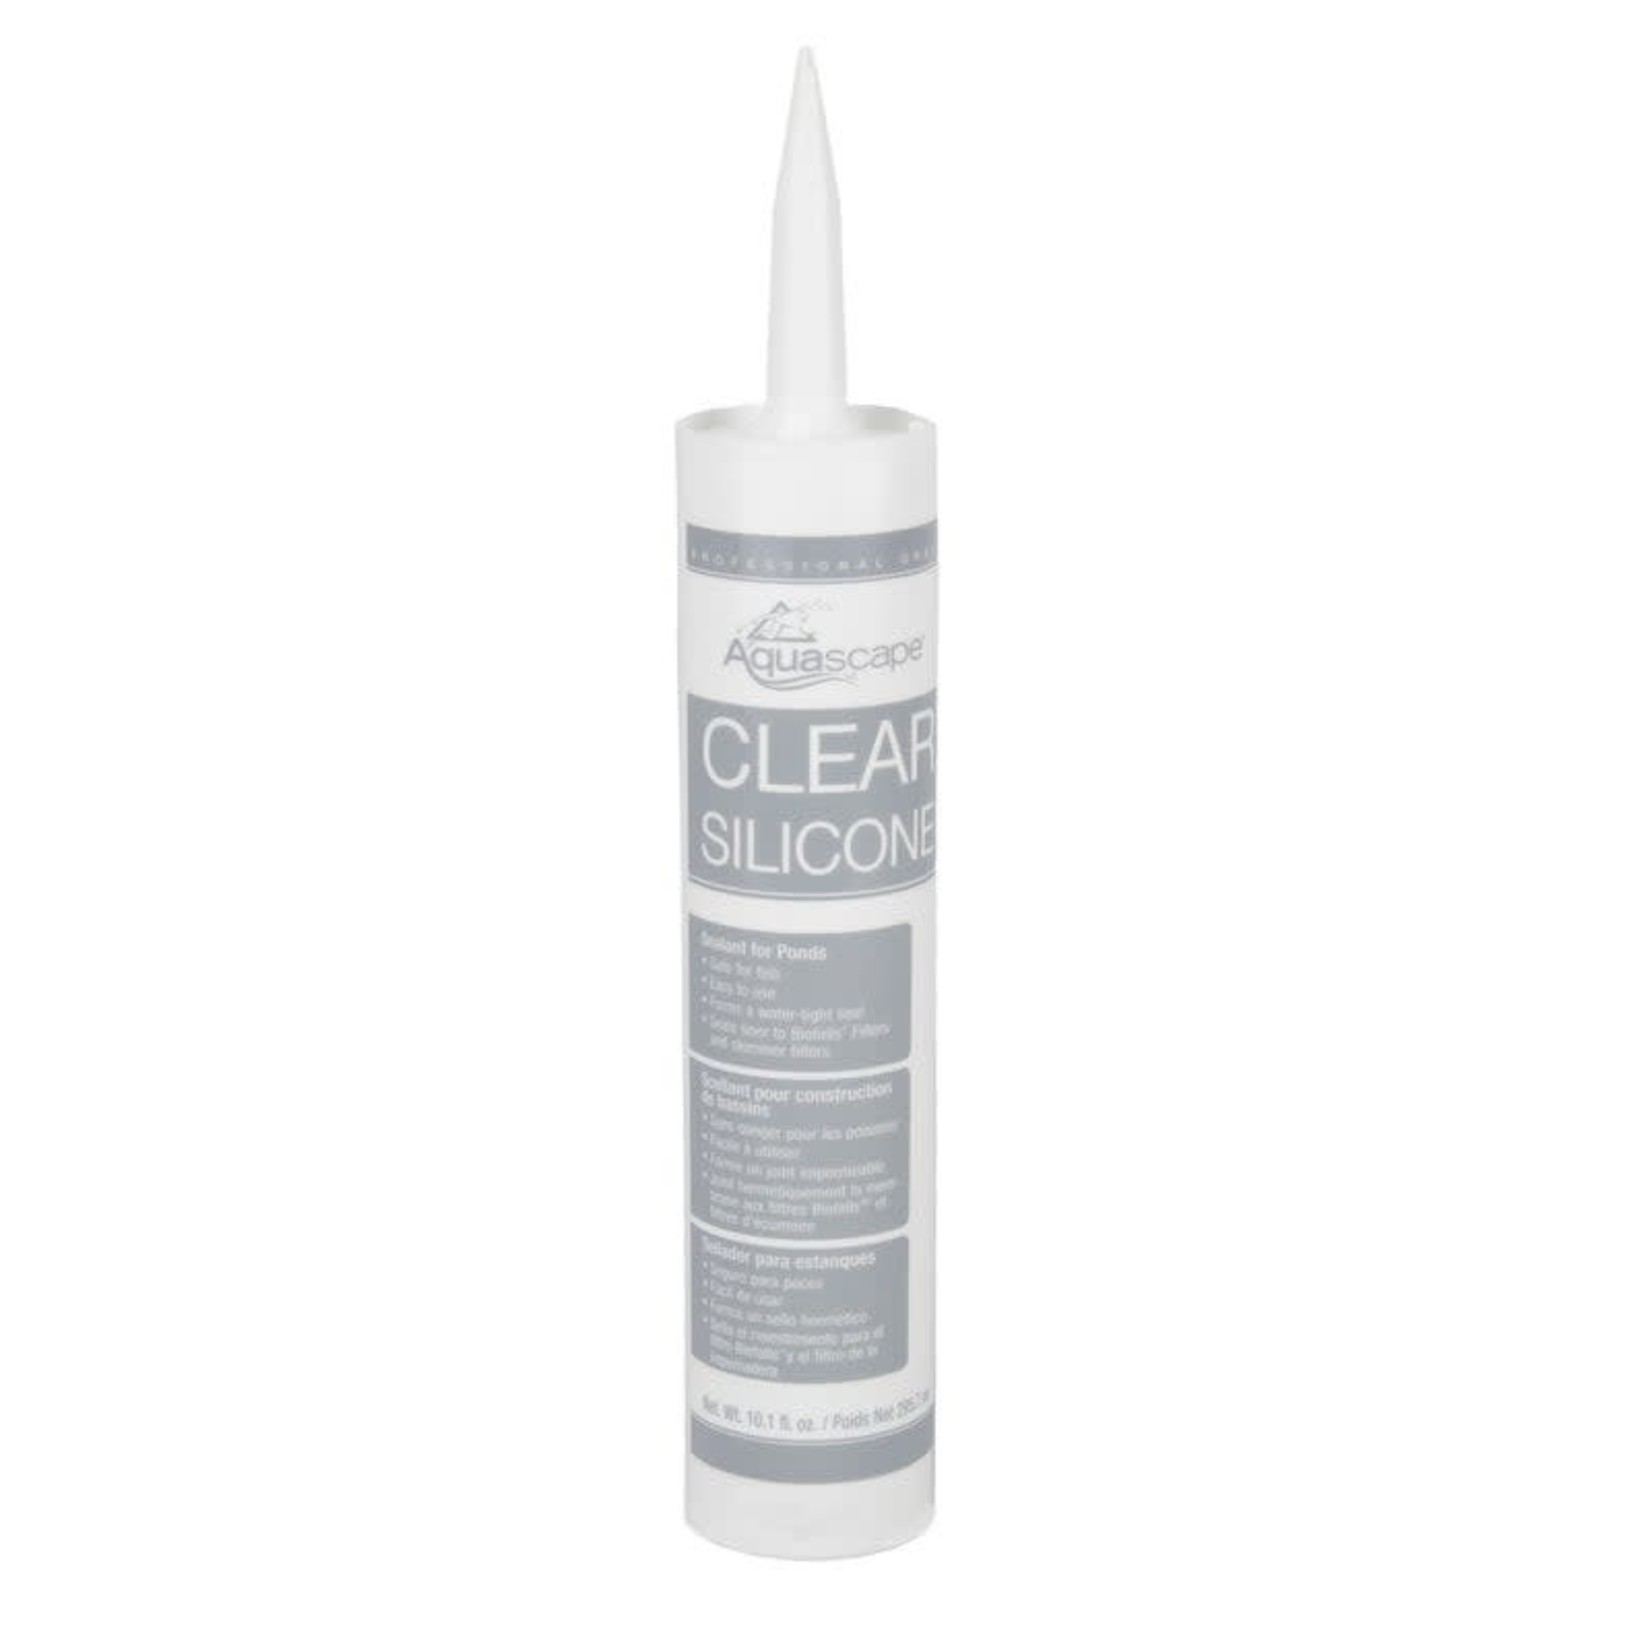 Aquascape Clear Silicone Sealant - 10.1oz Tube